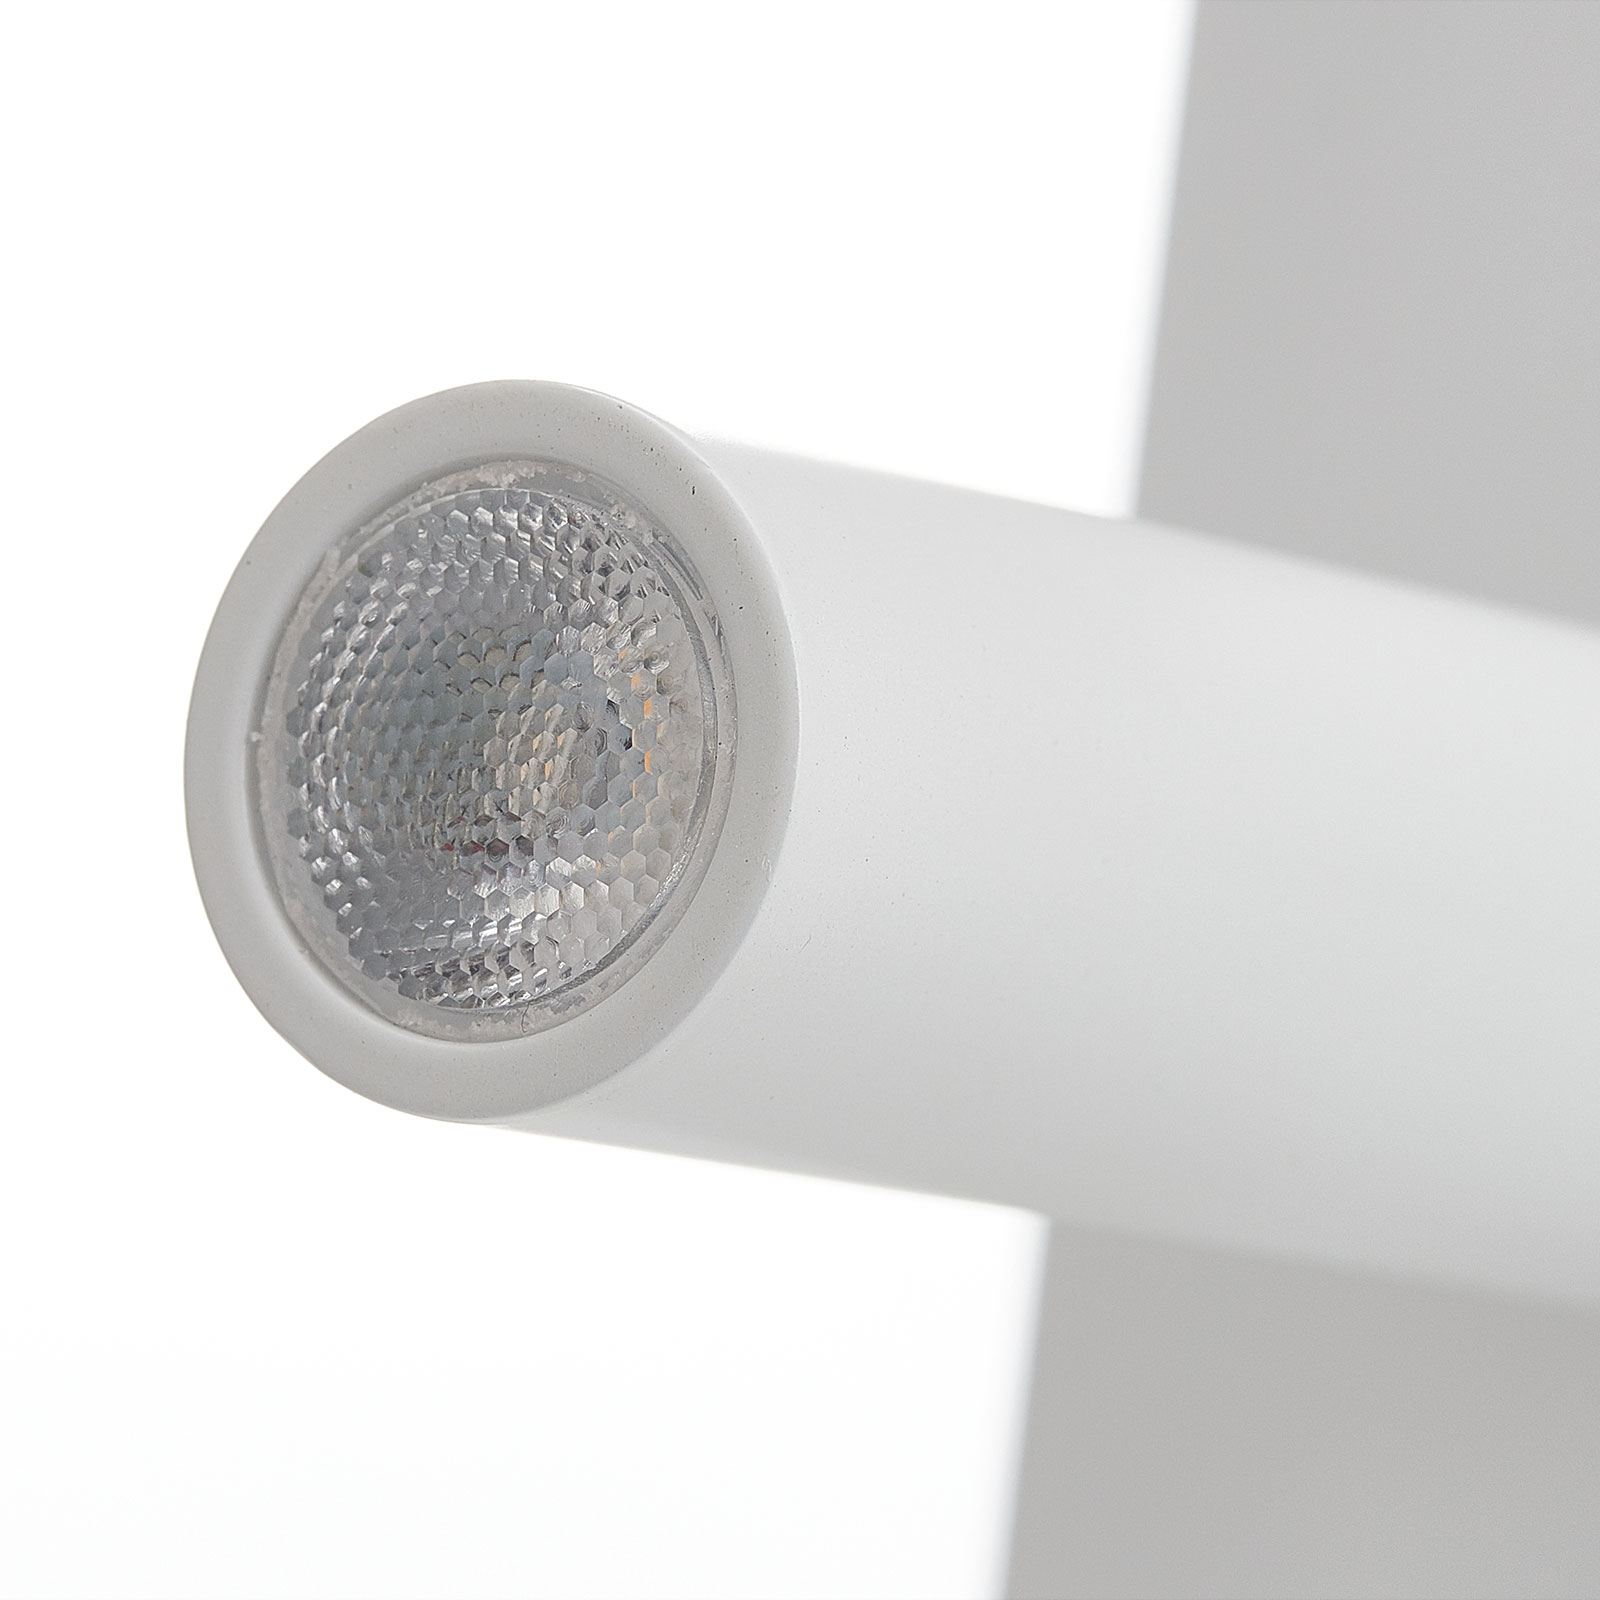 Moderna LED zidna svjetiljka Suau s USB priključkom za punjenje